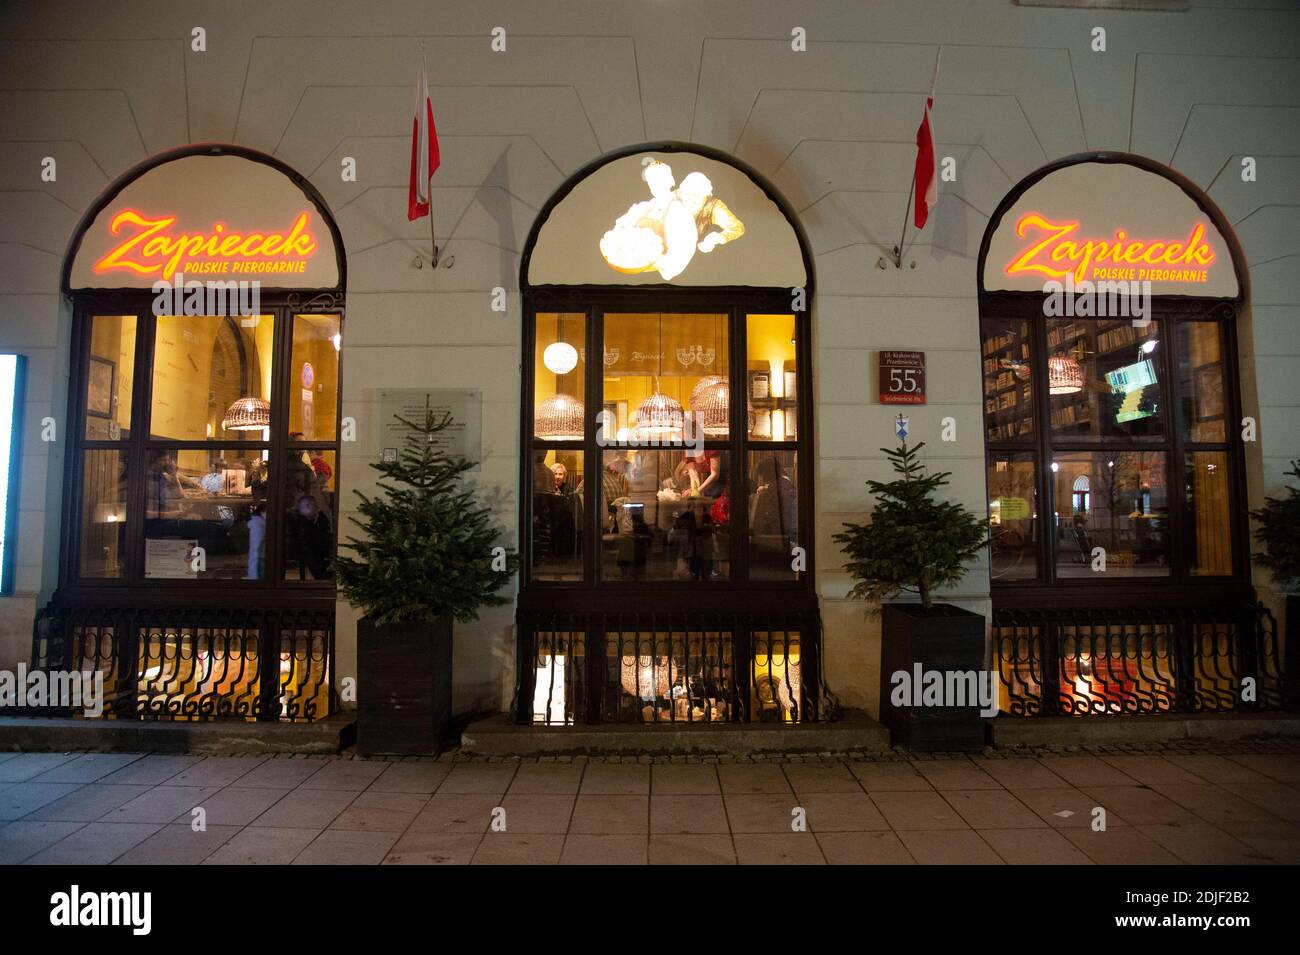 Zapiecek Restaurant, Polski Pierogarnie, Warsaw, Poland, (Photo by Casey B. Gibson) Stock Photo